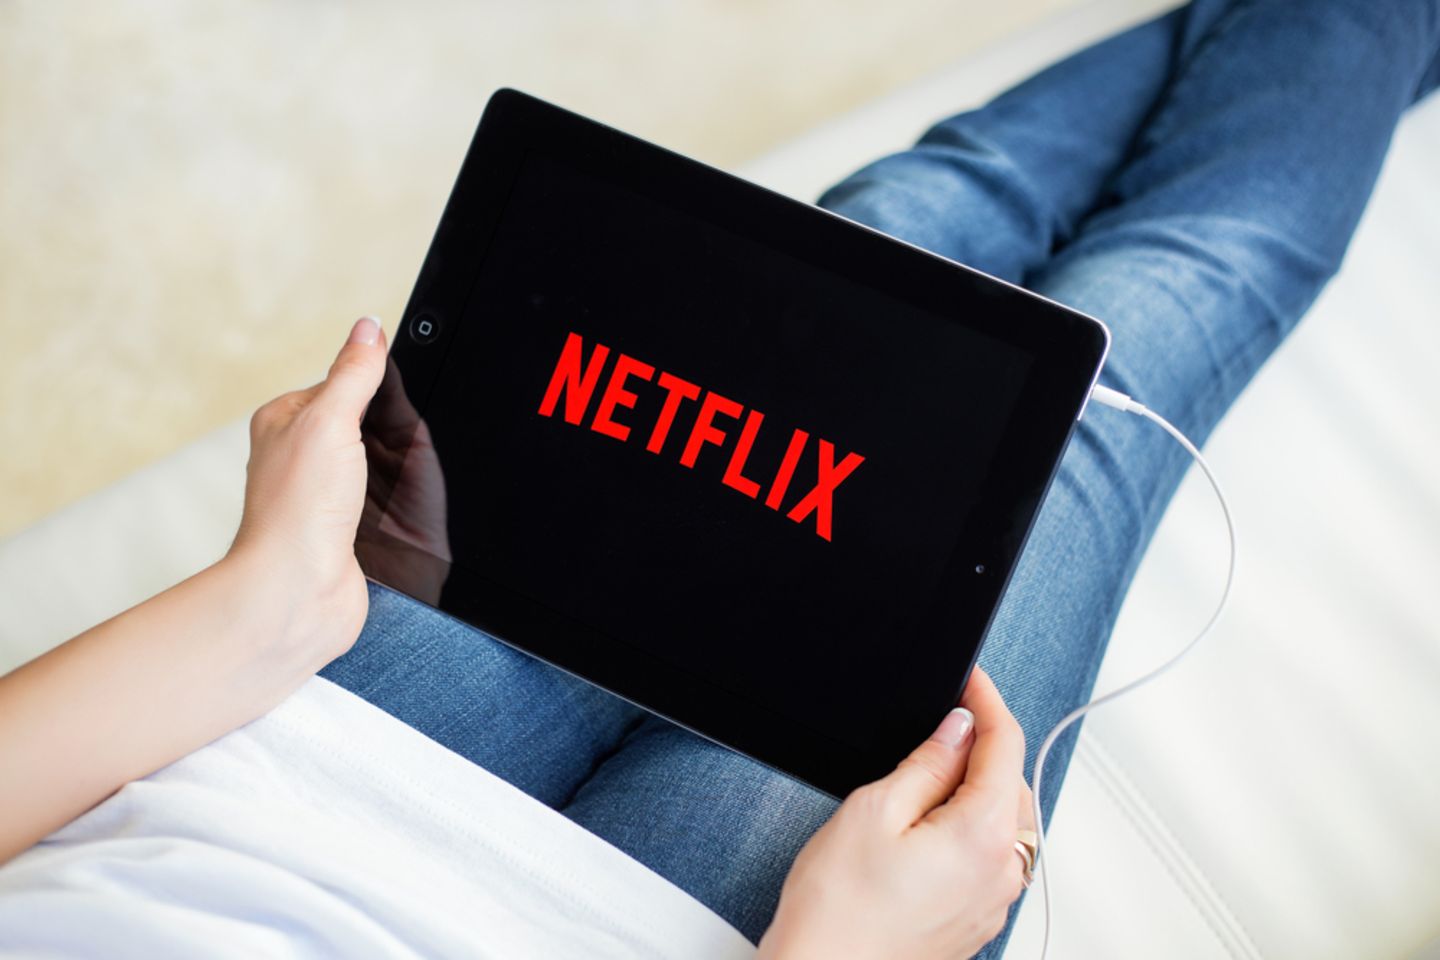 Gefahr für Zuschauer: Behörden warnen vor neuer Netflix-Serie